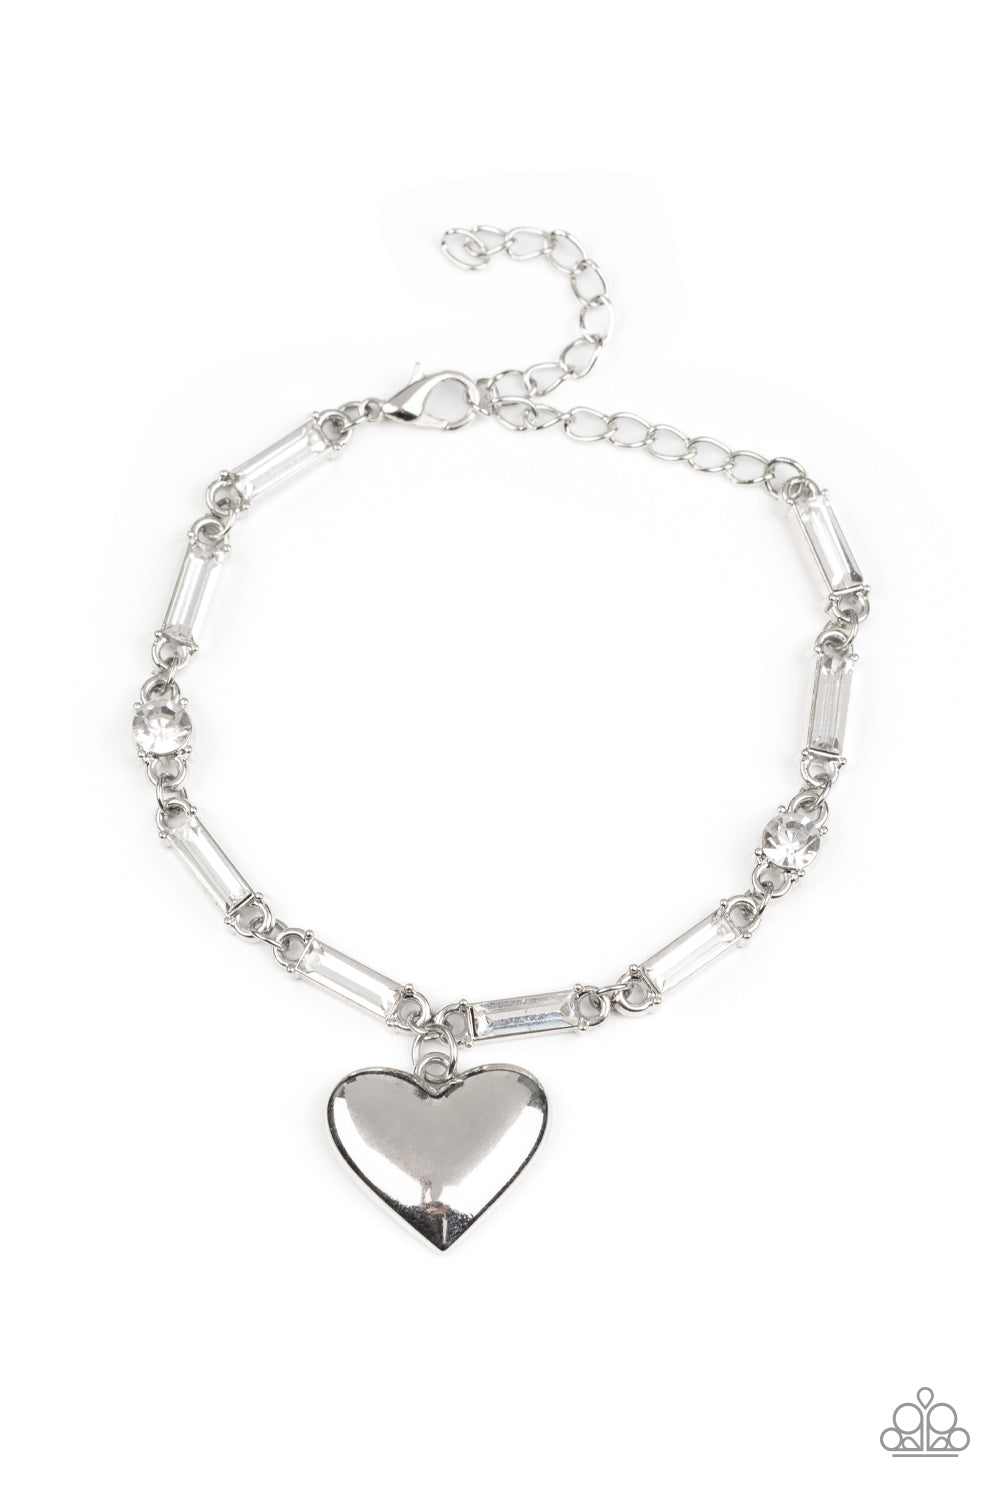 Sweetheart Secrets - White (Heart) Bracelet freeshipping - JewLz4u Gemstone Gallery